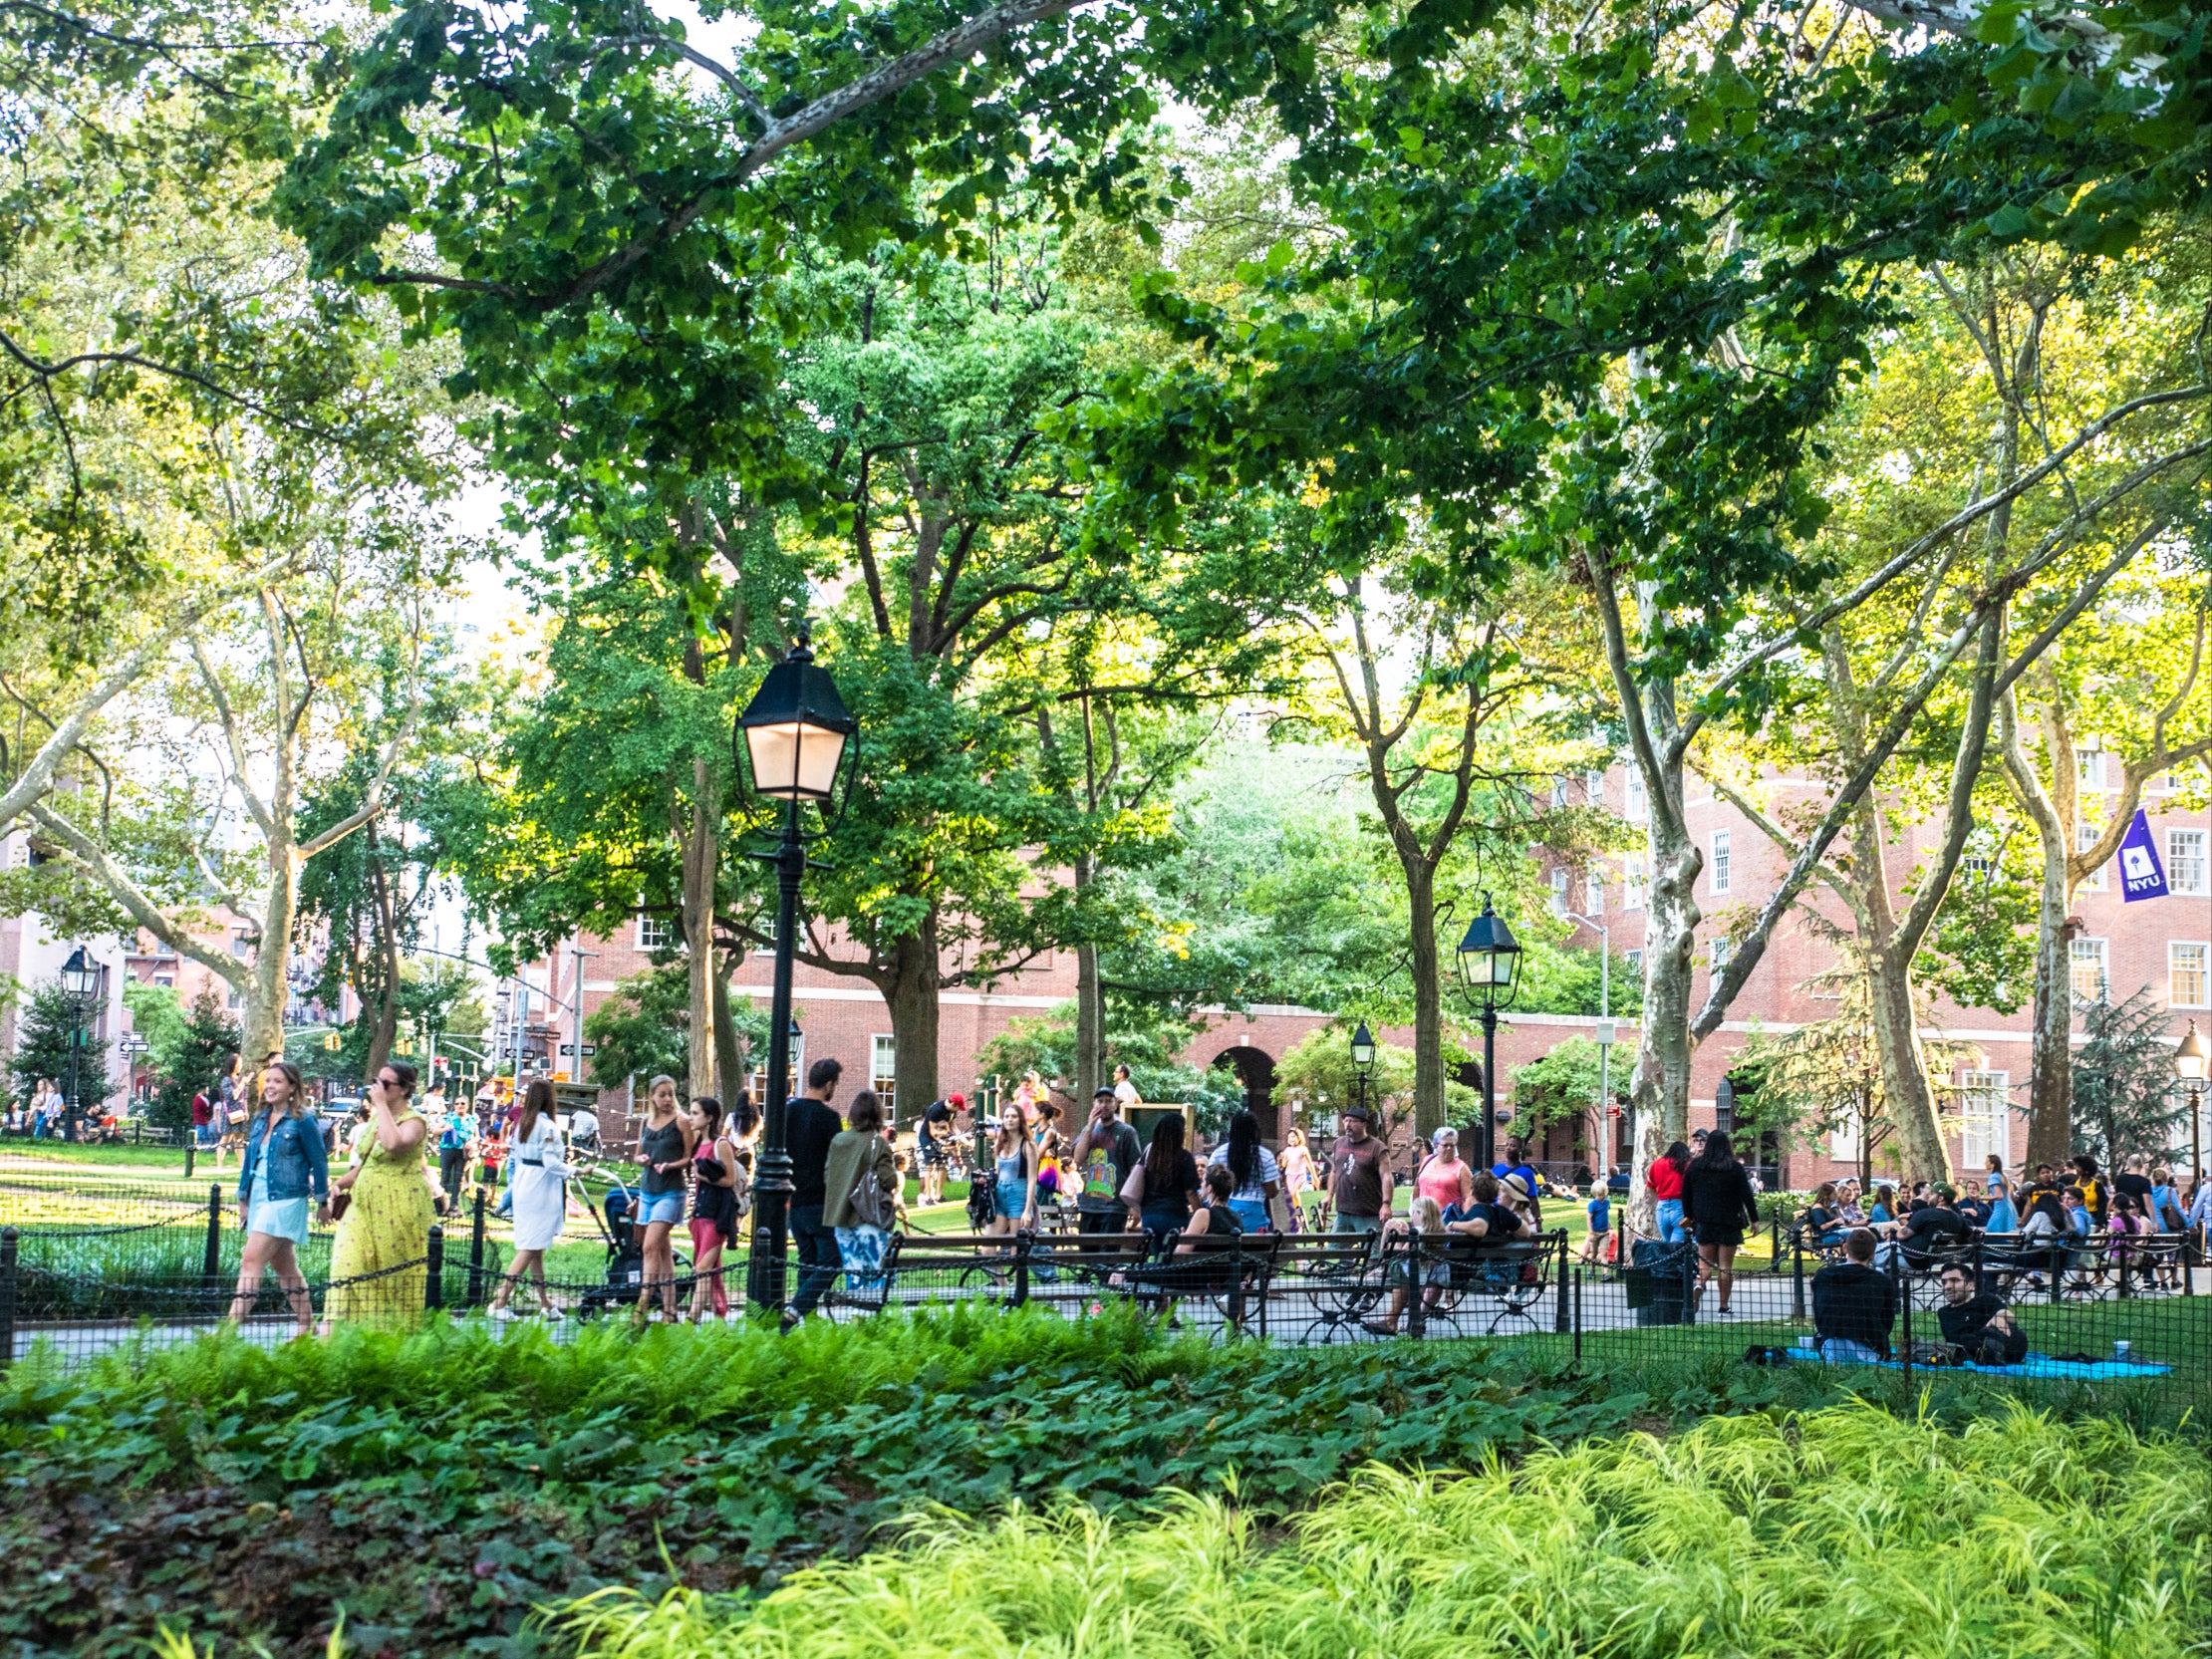 New York University students walk through Manhattan’s Washington Square Park in Greenwich Village